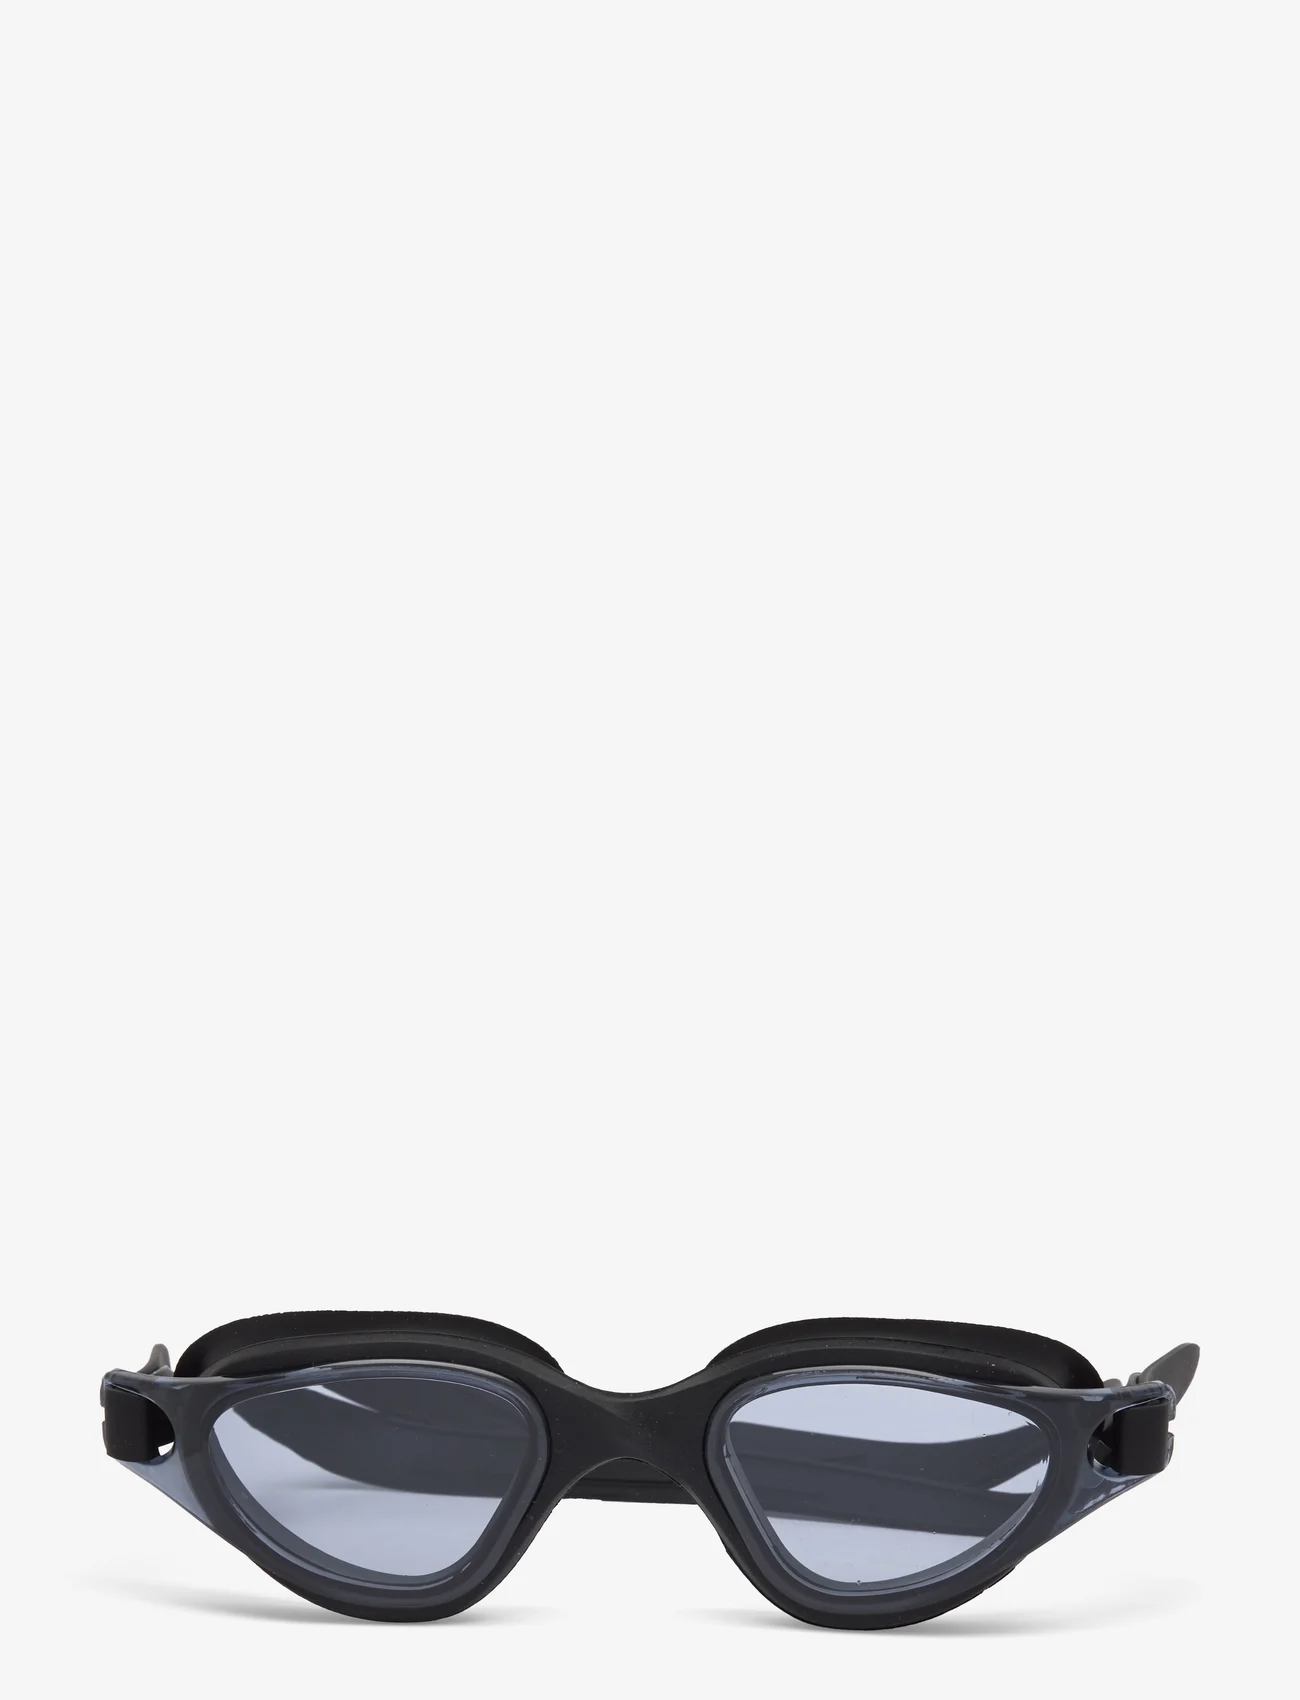 Cruz - Ormoc Swim Goggle - mažiausios kainos - black - 0